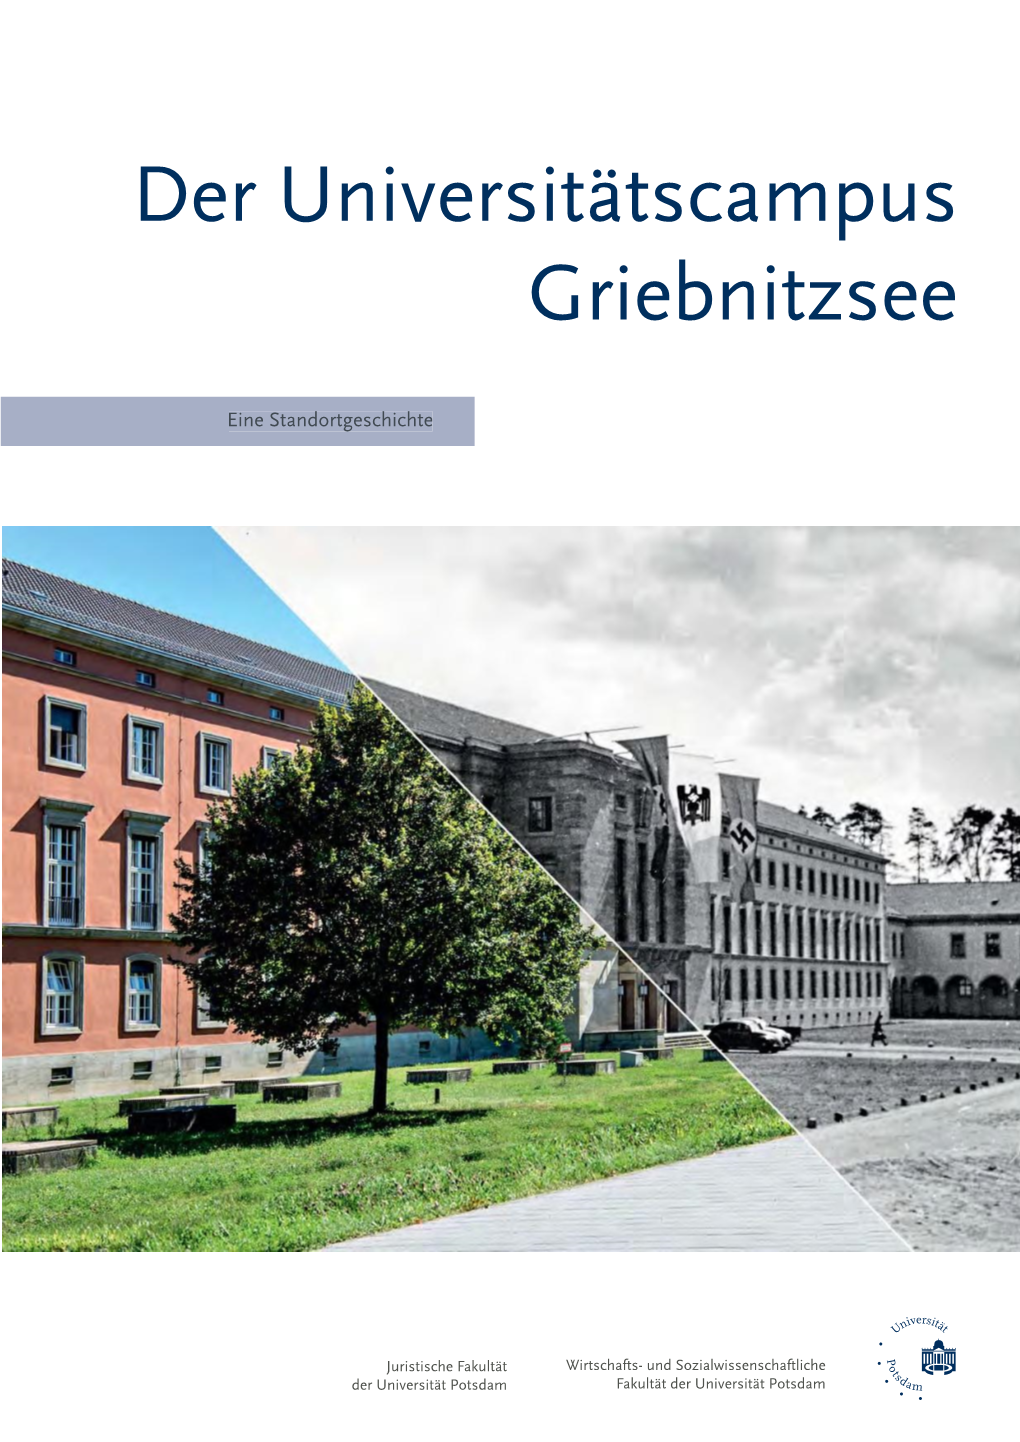 Der Universitätscampus Griebnitzsee